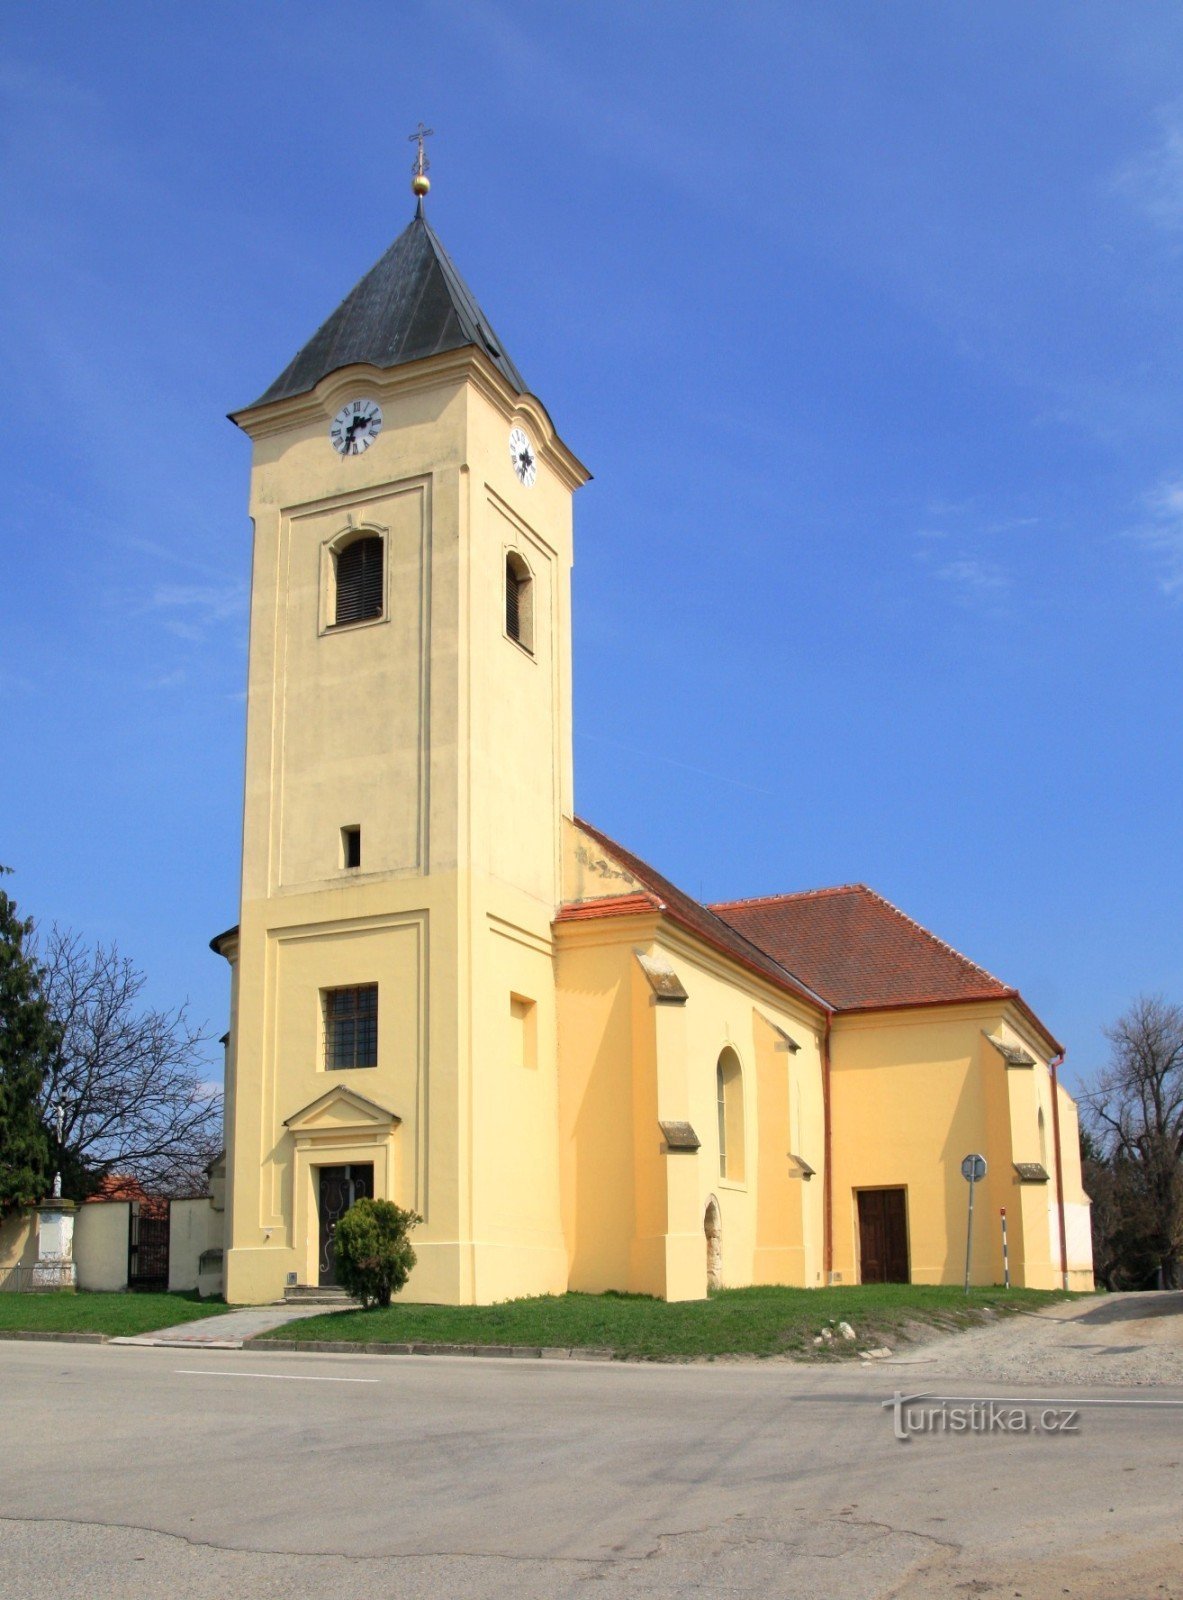 Церковь св. Олдржих в Страхотине